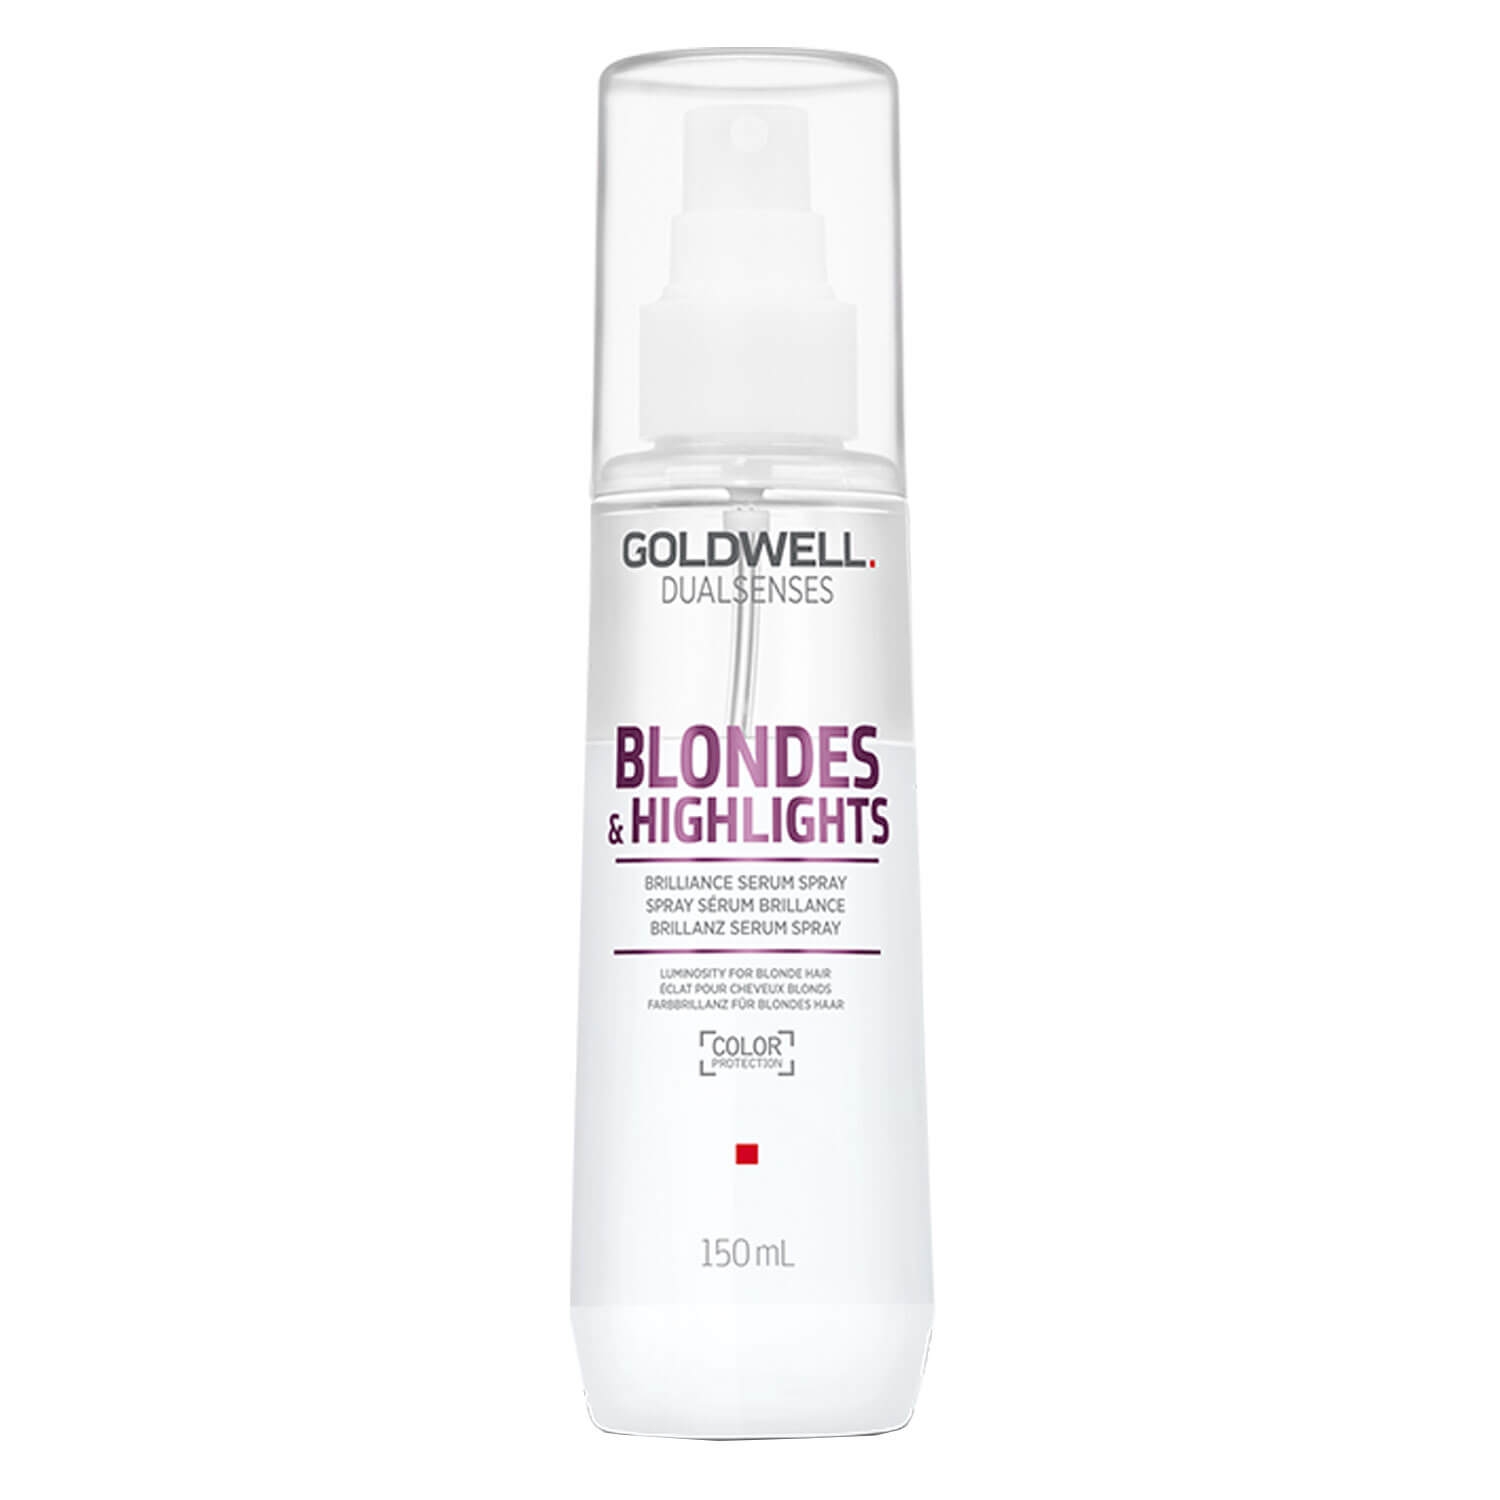 Produktbild von Dualsenses Blondes & Highlights - Brilliance Serum Spray